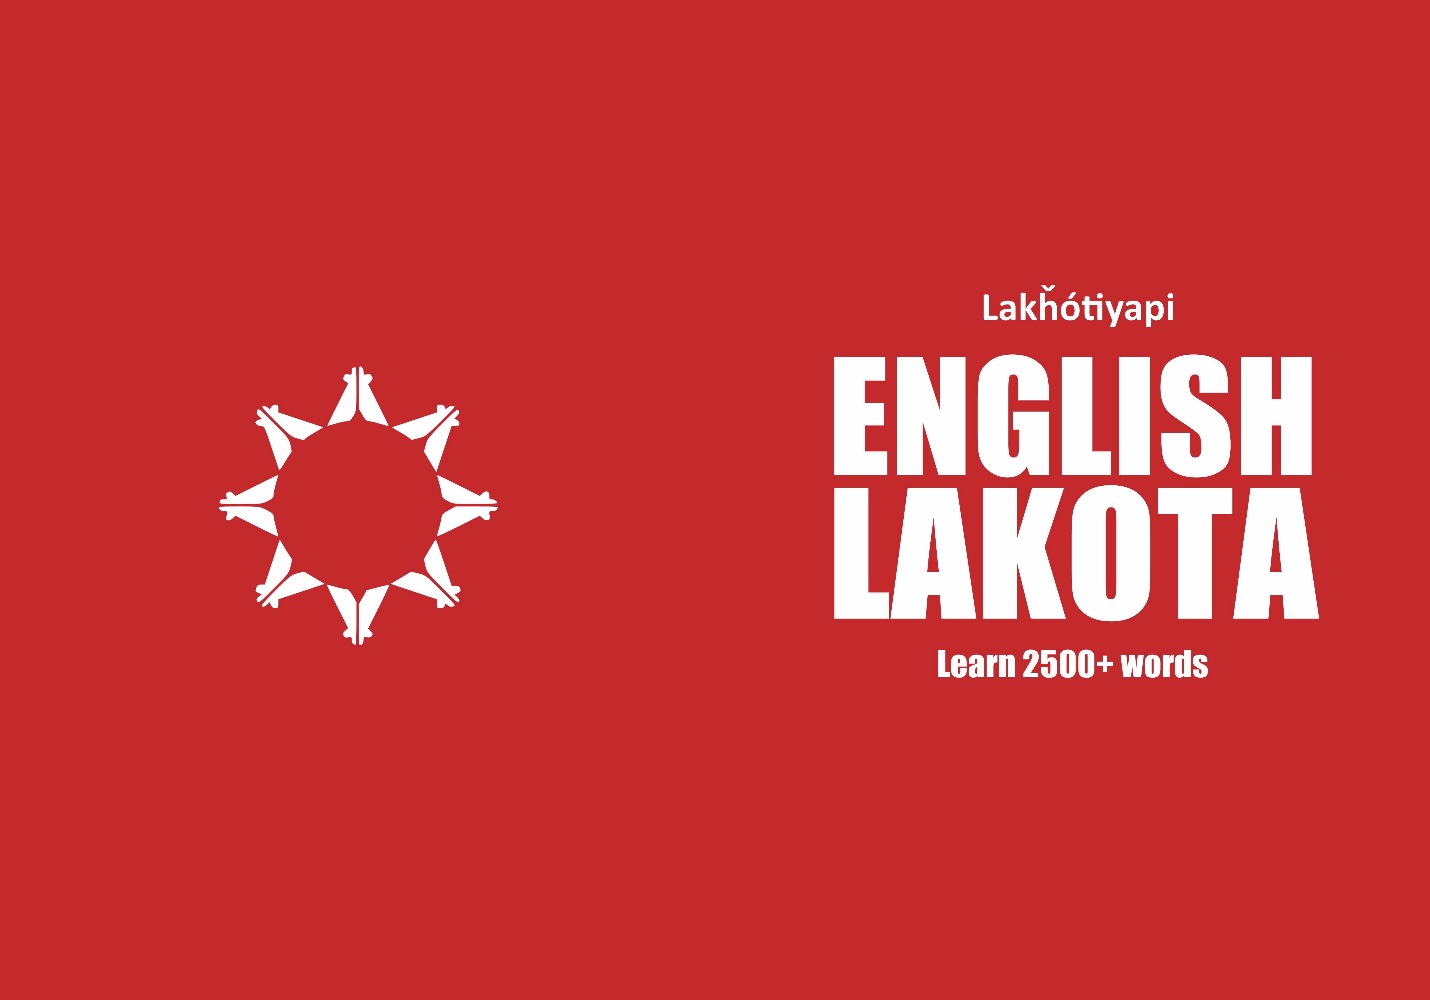 Lakota language learning notebook cover